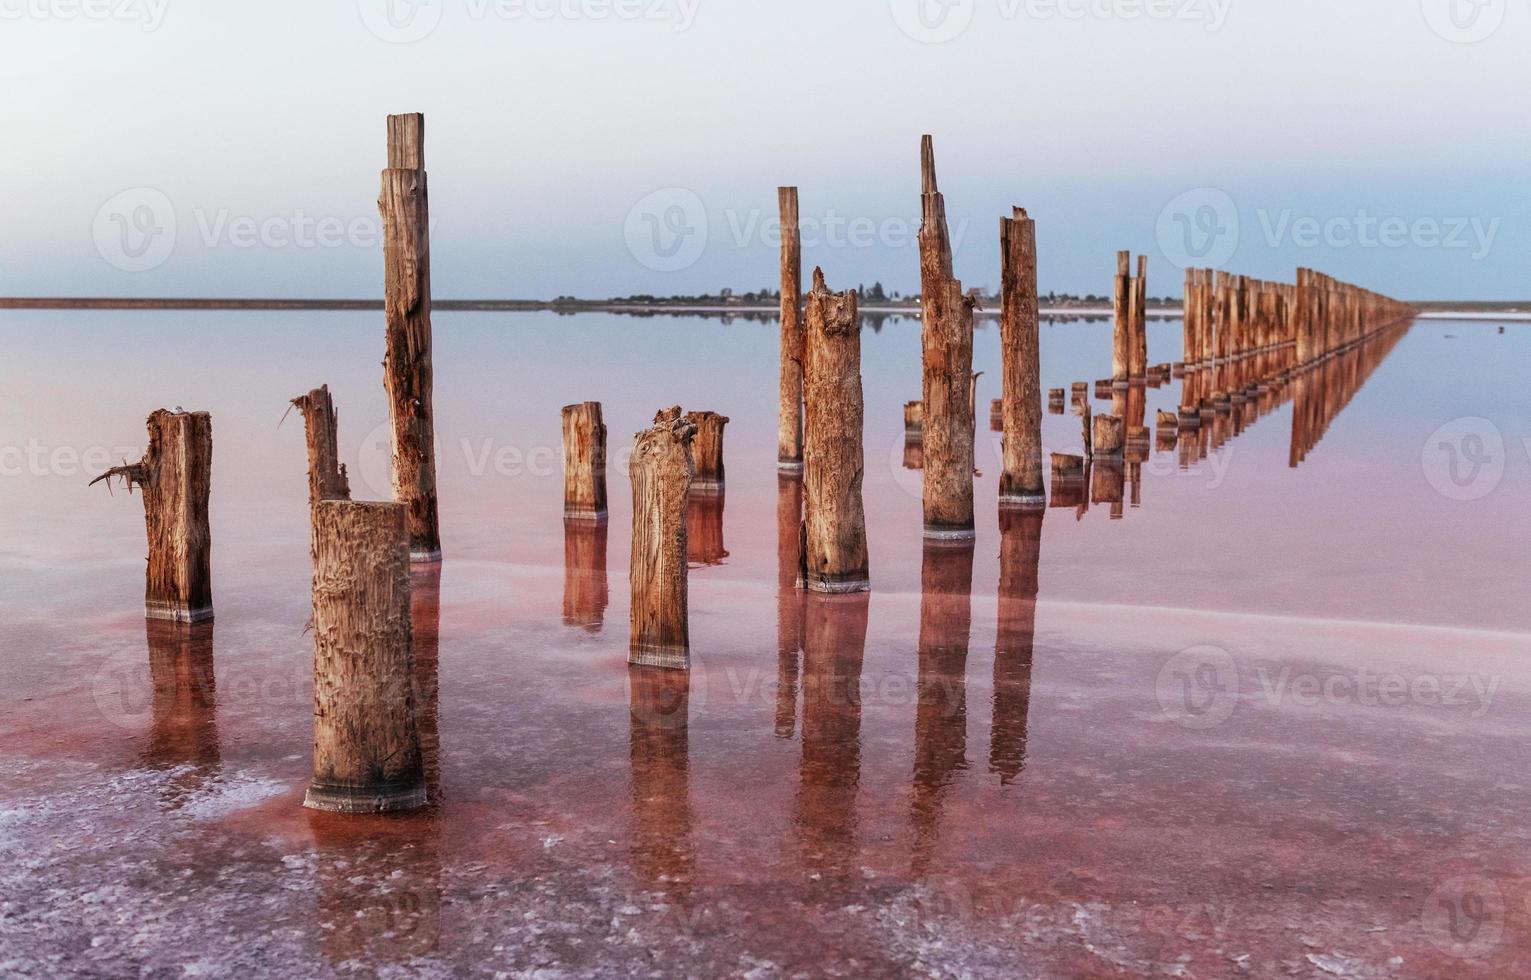 obstáculos de madeira no mar da ilha de jarilgach, ucrânia. durante o dia foto